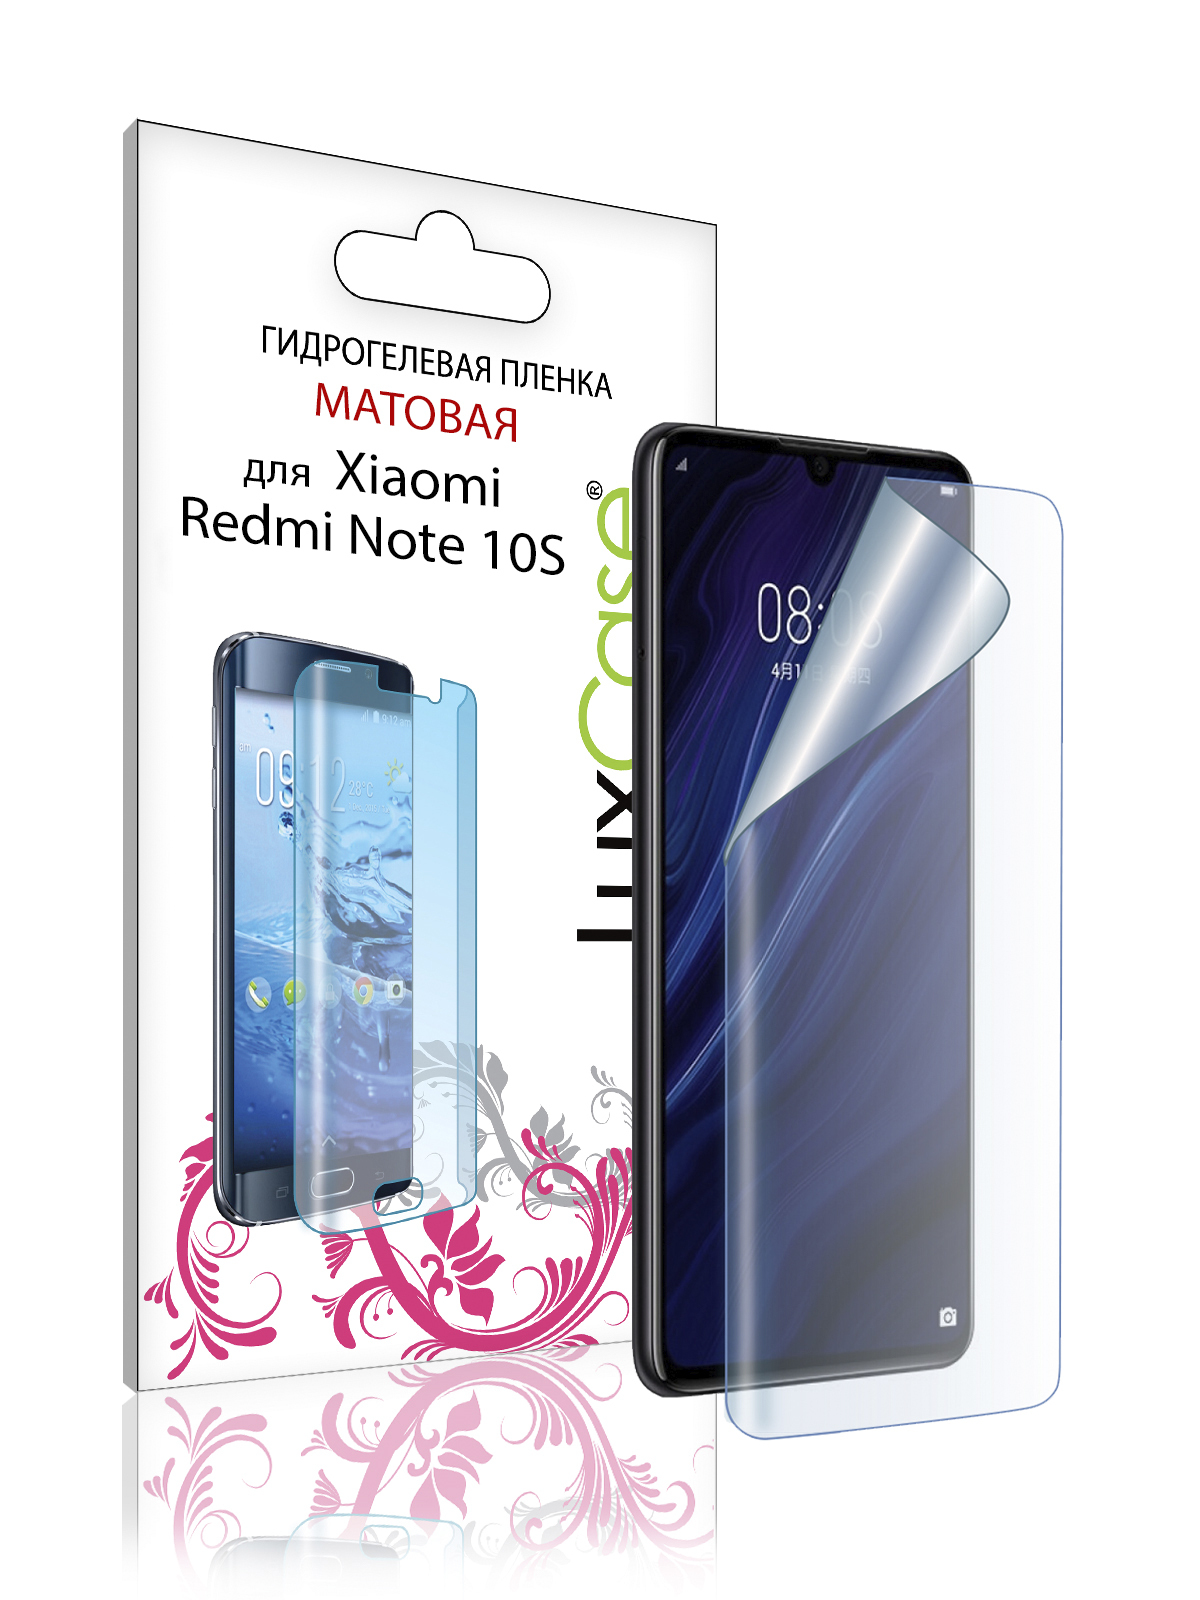 Пленка гидрогелевая LuxCase для Xiaomi Redmi Note 10s 0.14mm Матовая Front 86474 гидрогелевая пленка xiaomi redmi note 5 ксиаоми редми ноте 5 на дисплей и заднюю крышку матовая